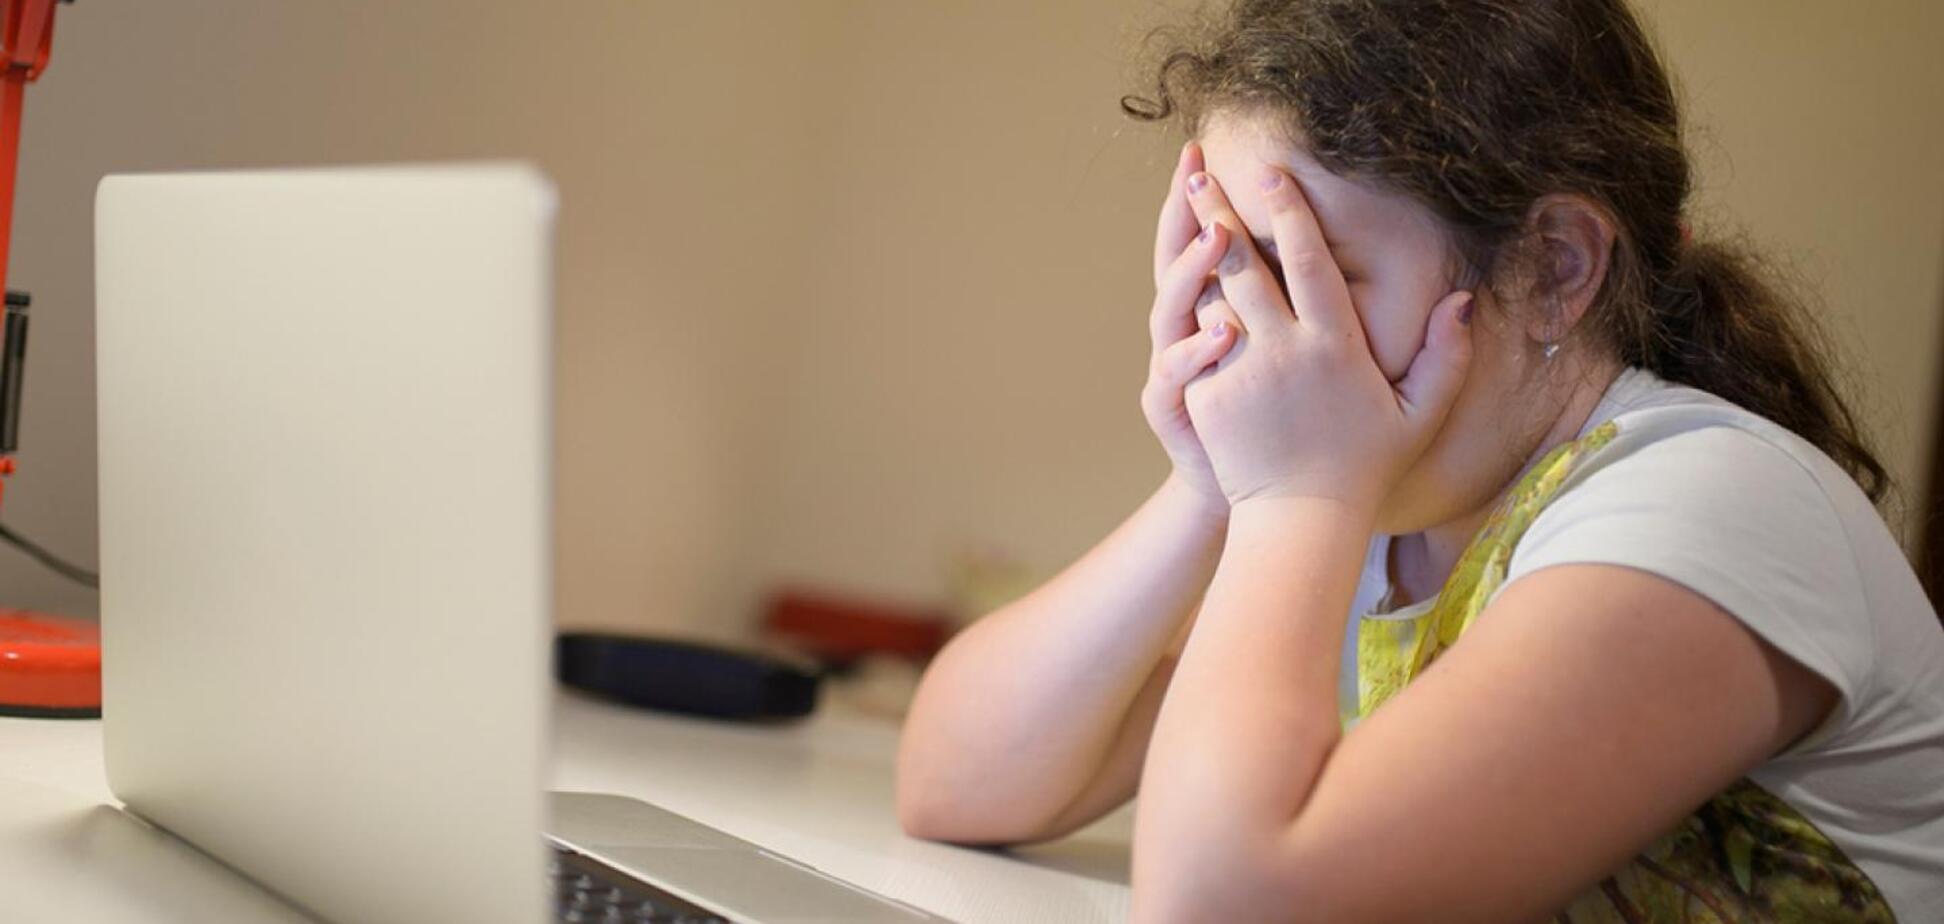 77% дітей не розповідають батькам про ситуацію сексуального насильства, яка трапилася з ними в Інтернеті